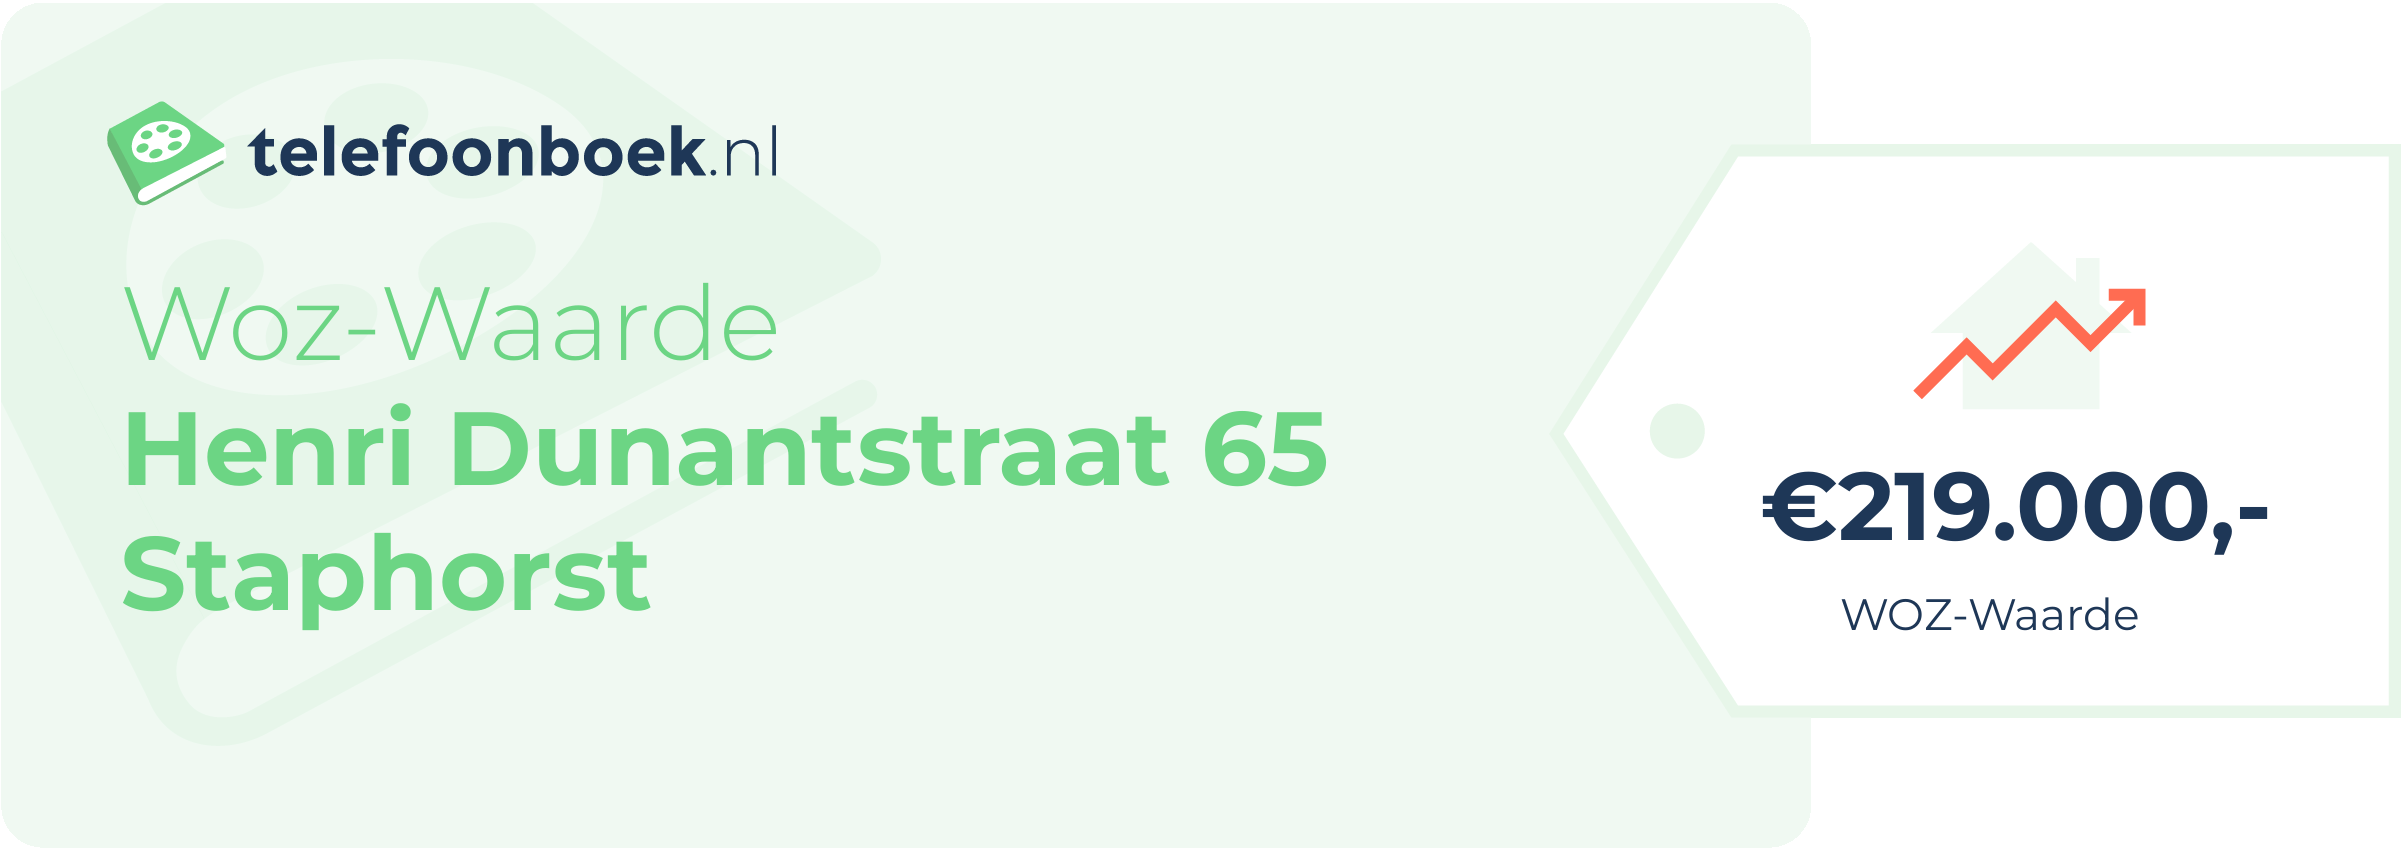 WOZ-waarde Henri Dunantstraat 65 Staphorst